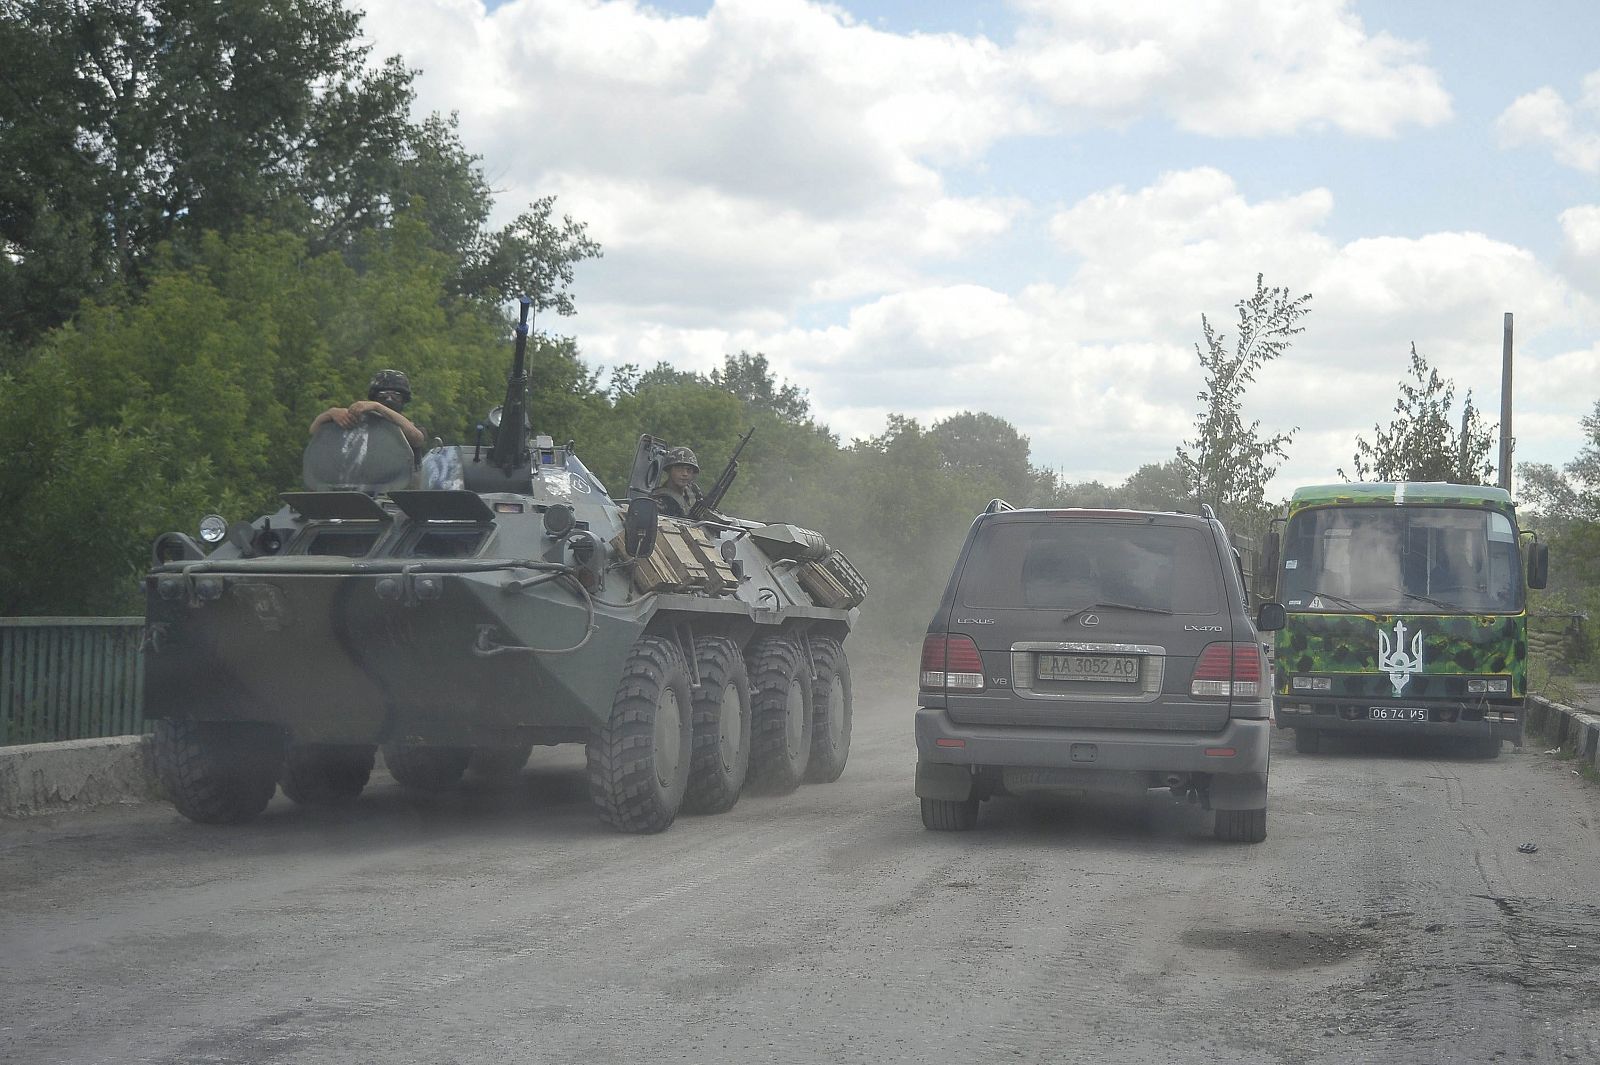 Soldados voluntarios ucranianos patrullan en un punto de control en Lugansk (Ucrania) el 29 de juno de 2014